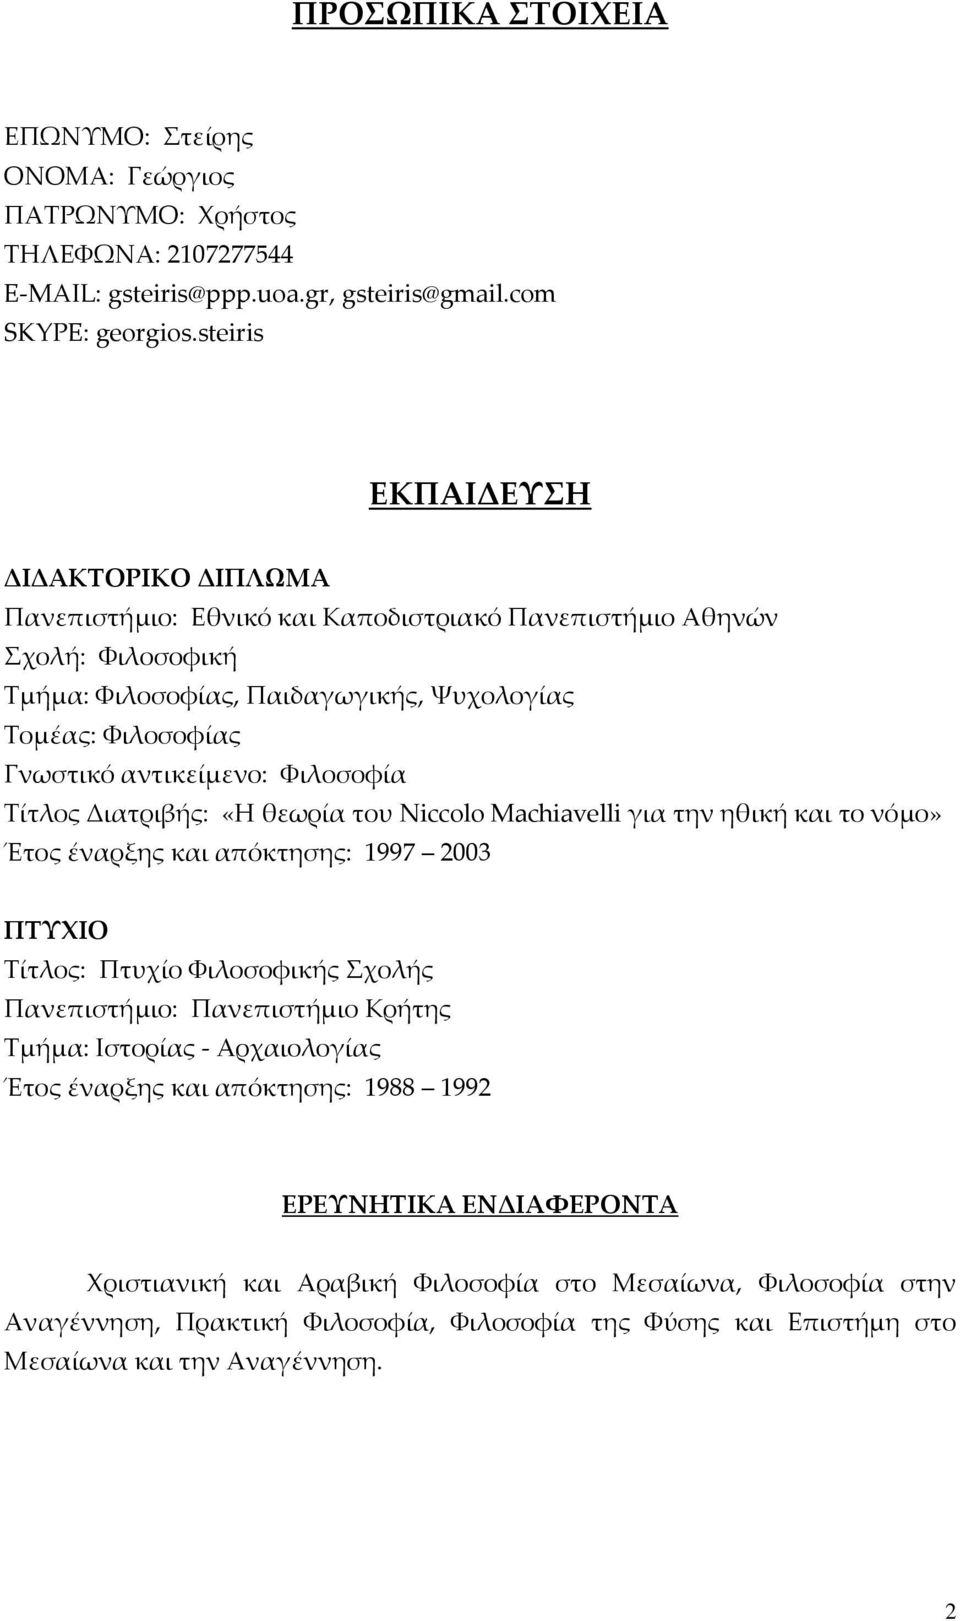 Υιλοσοφία Σίτλος Διατριβής: «Η θεωρία του Niccolo Machiavelli για την ηθική και το νόμο» Έτος έναρξης και απόκτησης: 1997 2003 ΠΣΤΦΙΟ Σίτλος: Πτυχίο Υιλοσοφικής χολής Πανεπιστήμιο: Πανεπιστήμιο